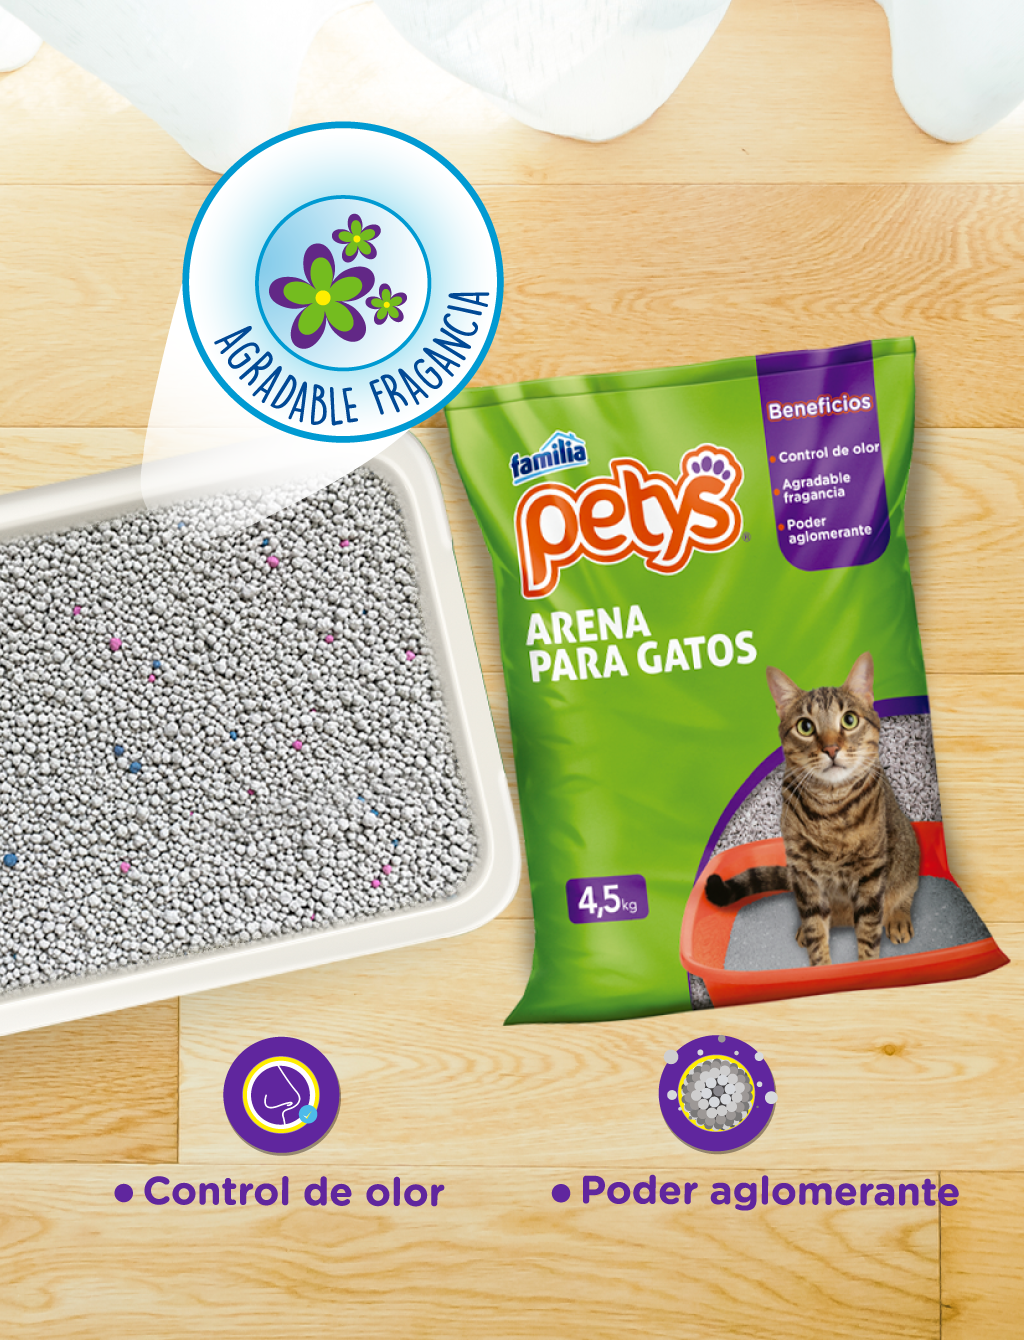 ¿Cómo evitar malos olores en mi hogar con la arena para gatos Petys?